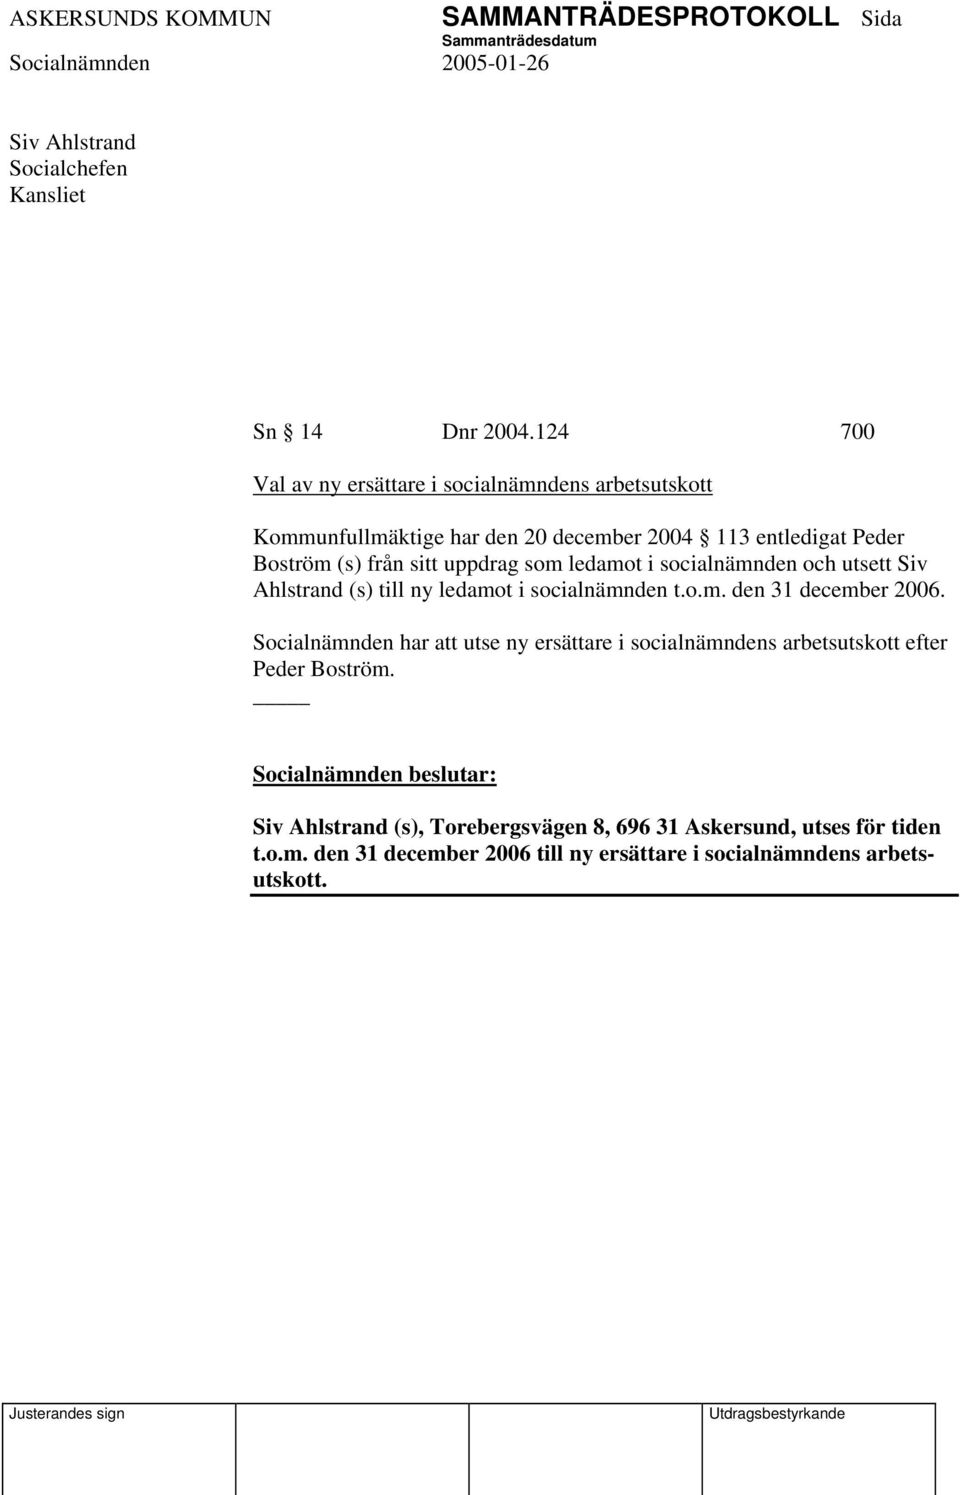 uppdrag som ledamot i socialnämnden och utsett Siv Ahlstrand (s) till ny ledamot i socialnämnden t.o.m. den 31 december 2006.